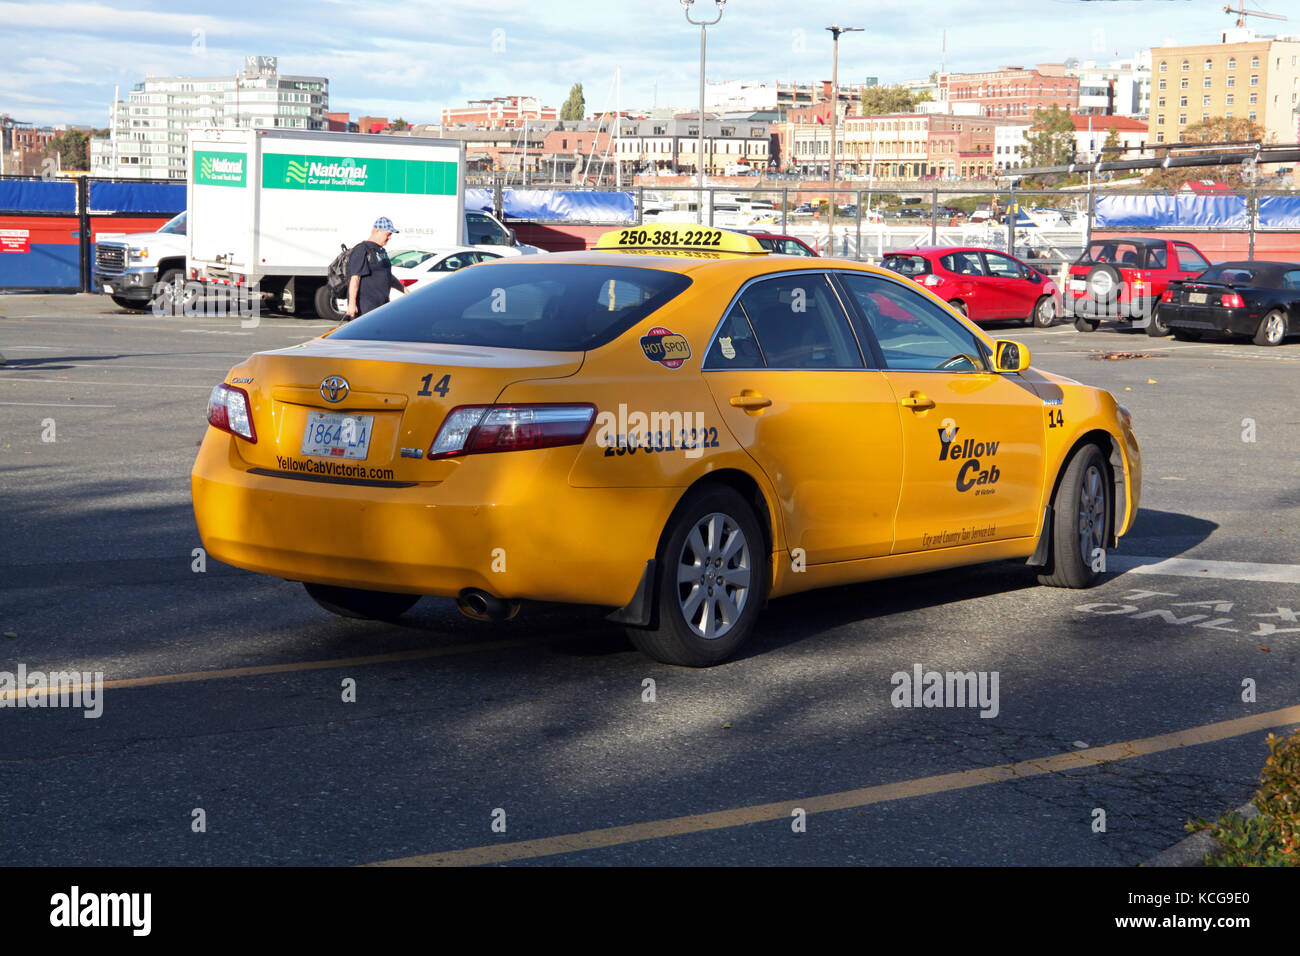 yellow cab Victoria BC, Canada Stock Photo